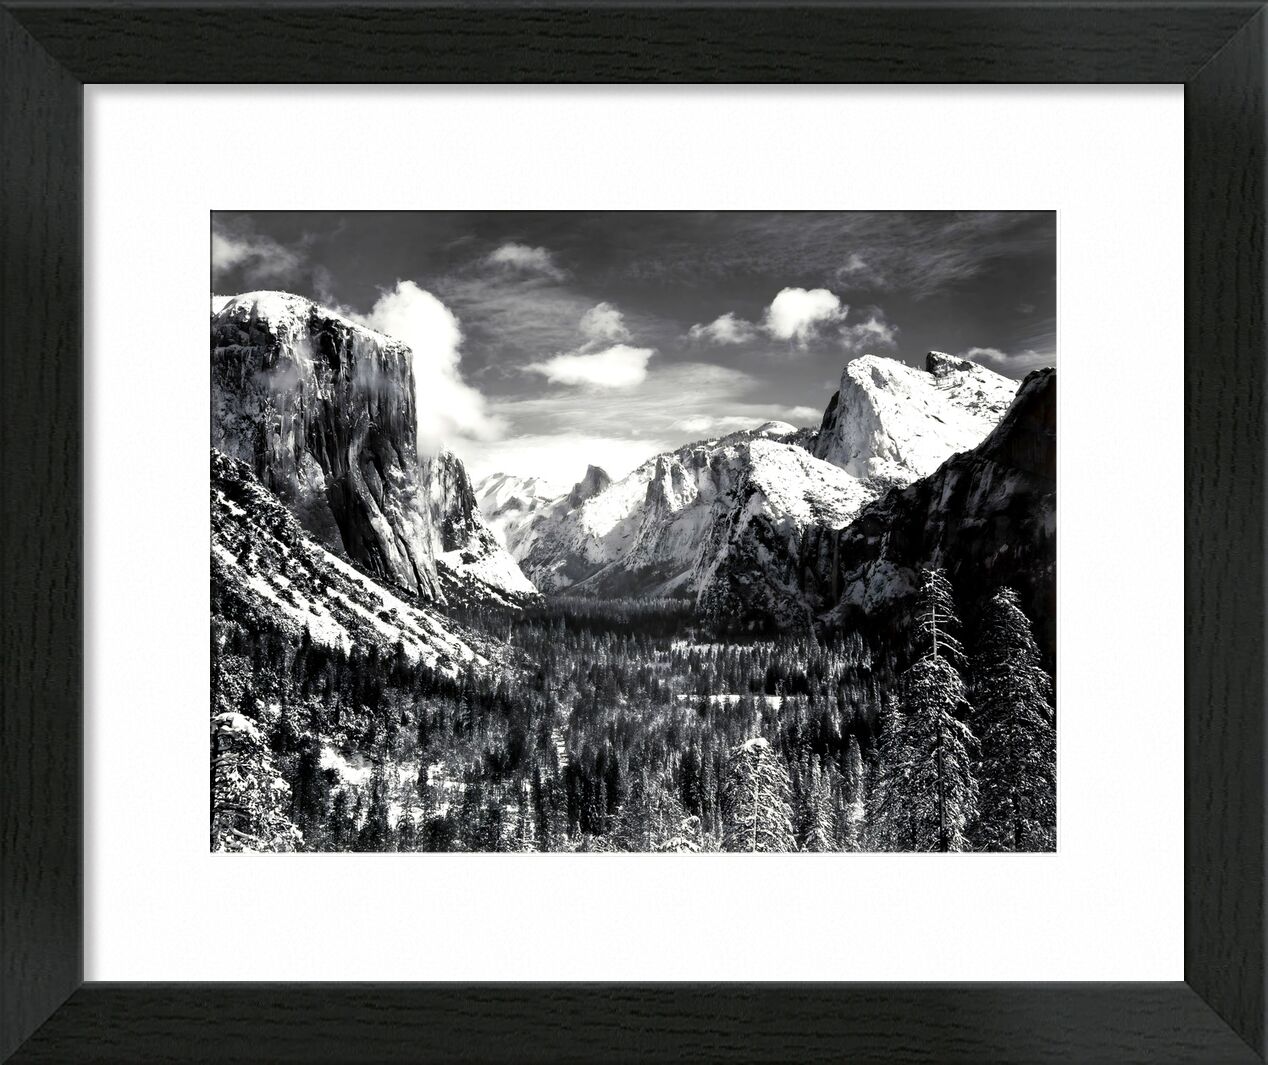 Yosemite Valley vom Inspiration Point, Winter - Ansel Adams von Bildende Kunst, Prodi Art, Winter, Landschaft, Wolken, Tal, Berge, adams, ANSEL ADAMS